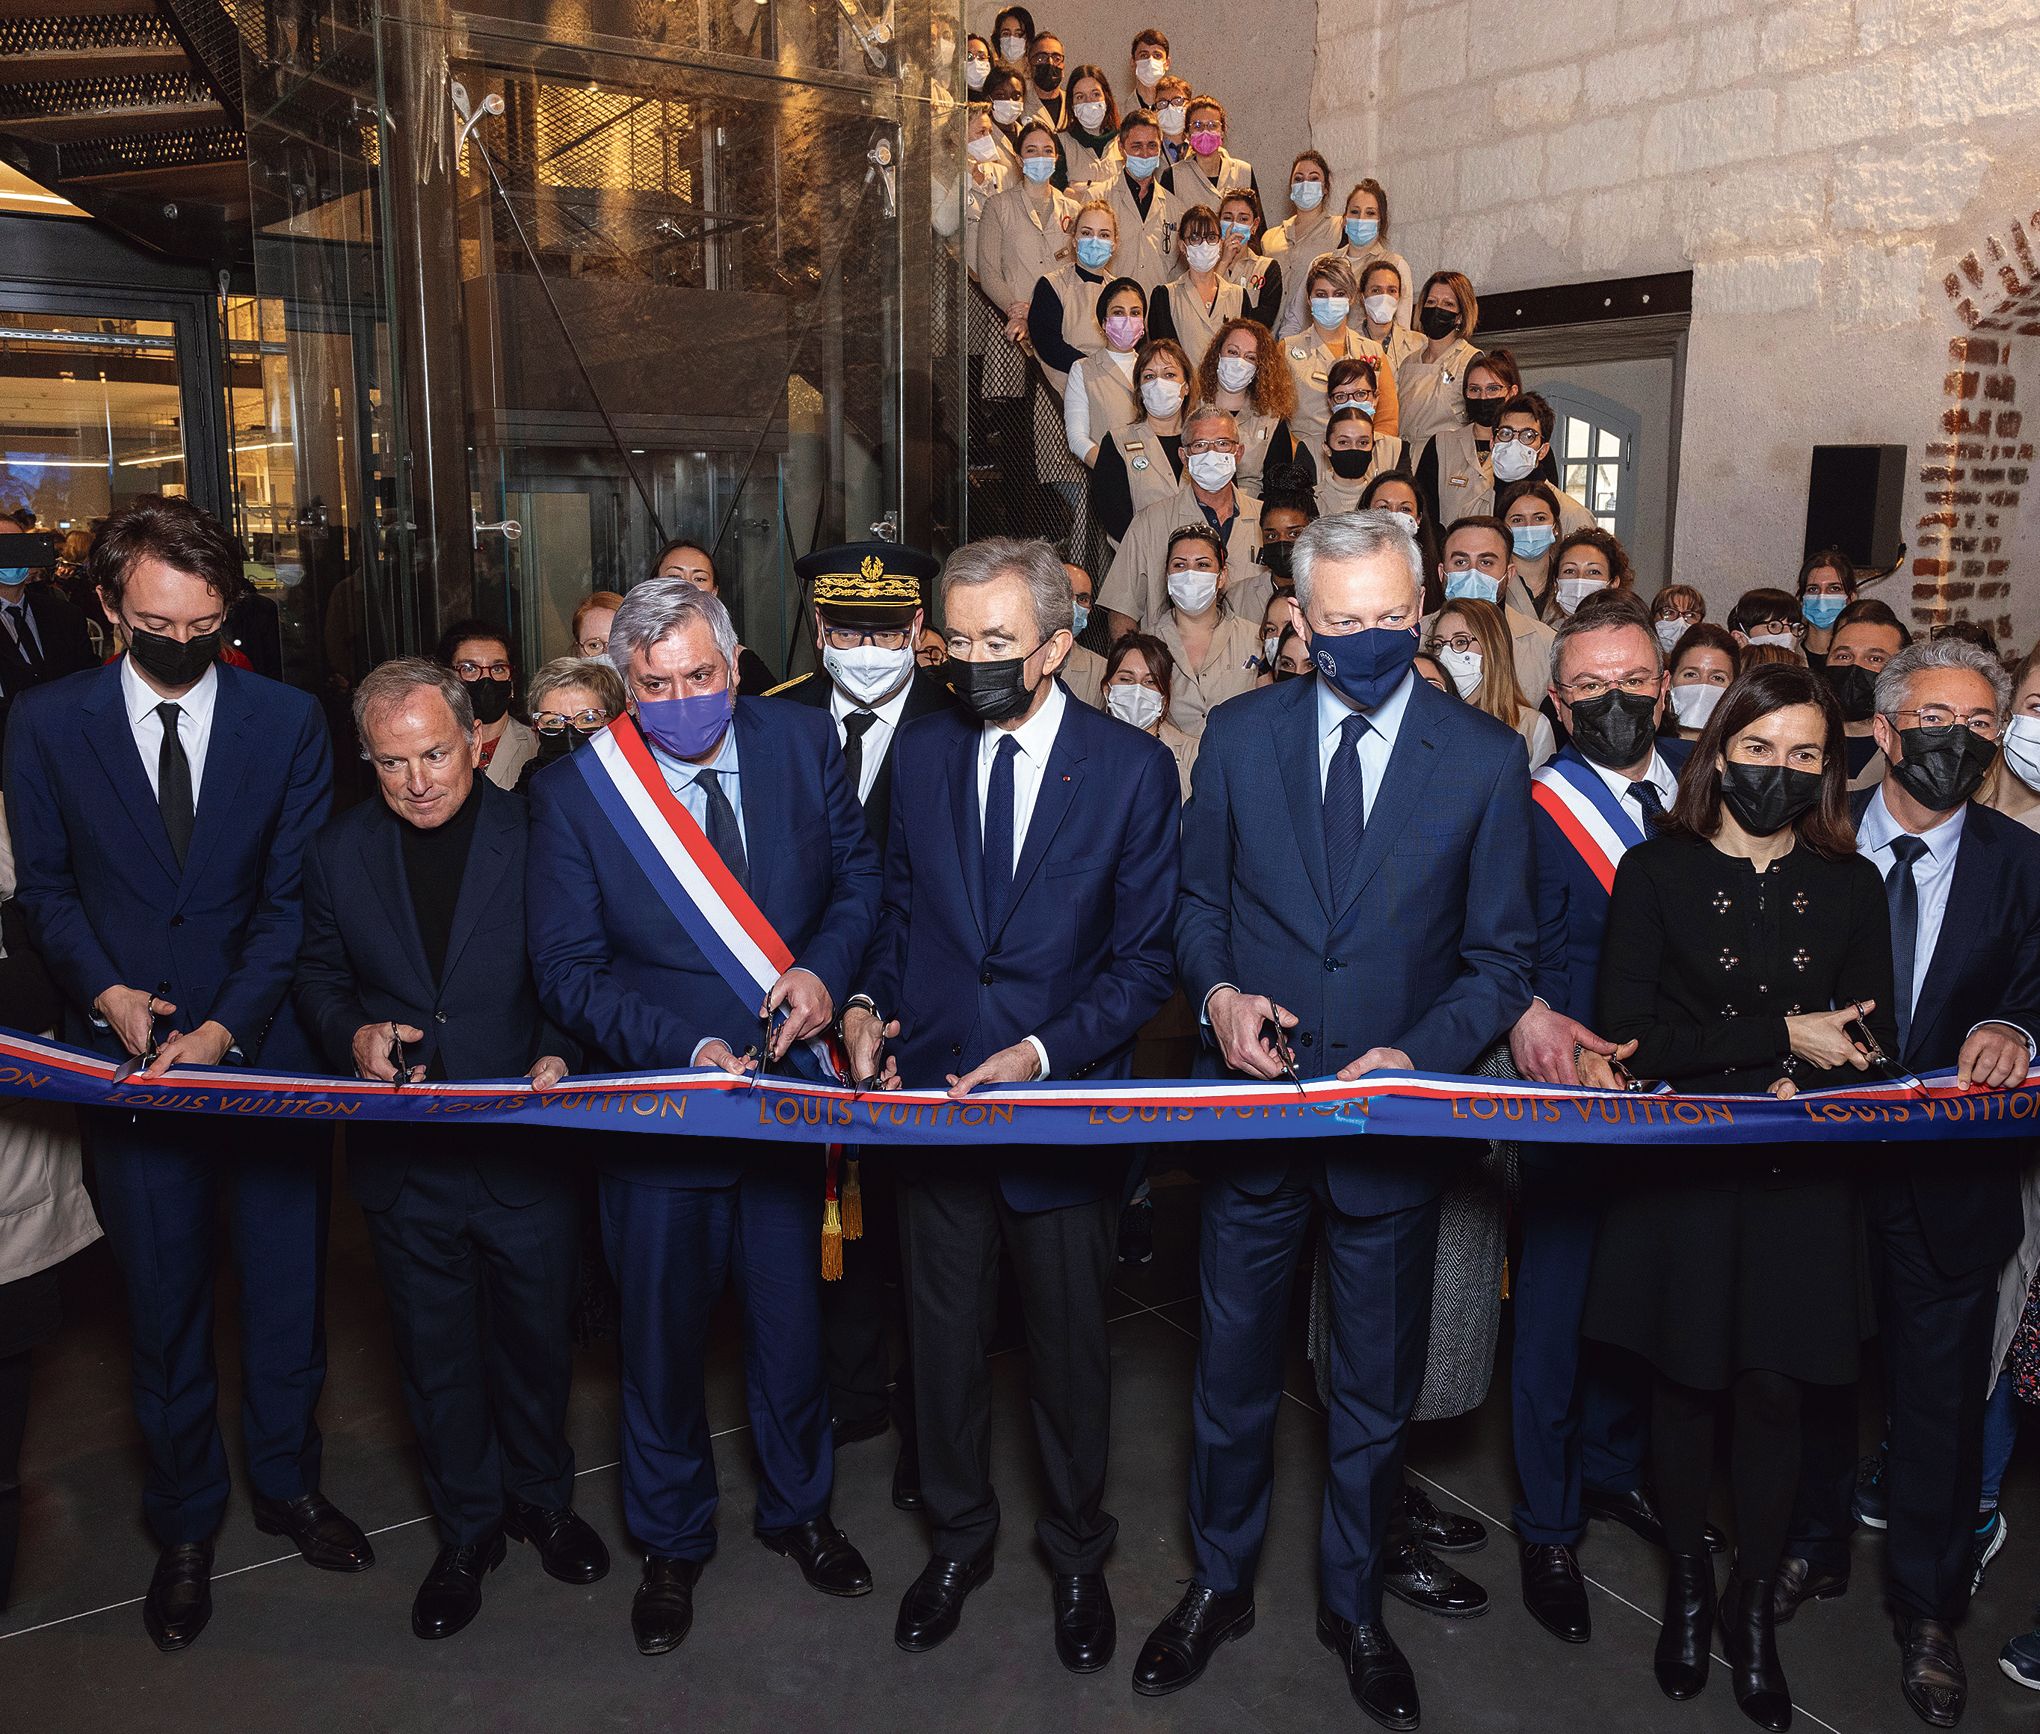 Louis Vuitton investit dans son réseau de magasins en France